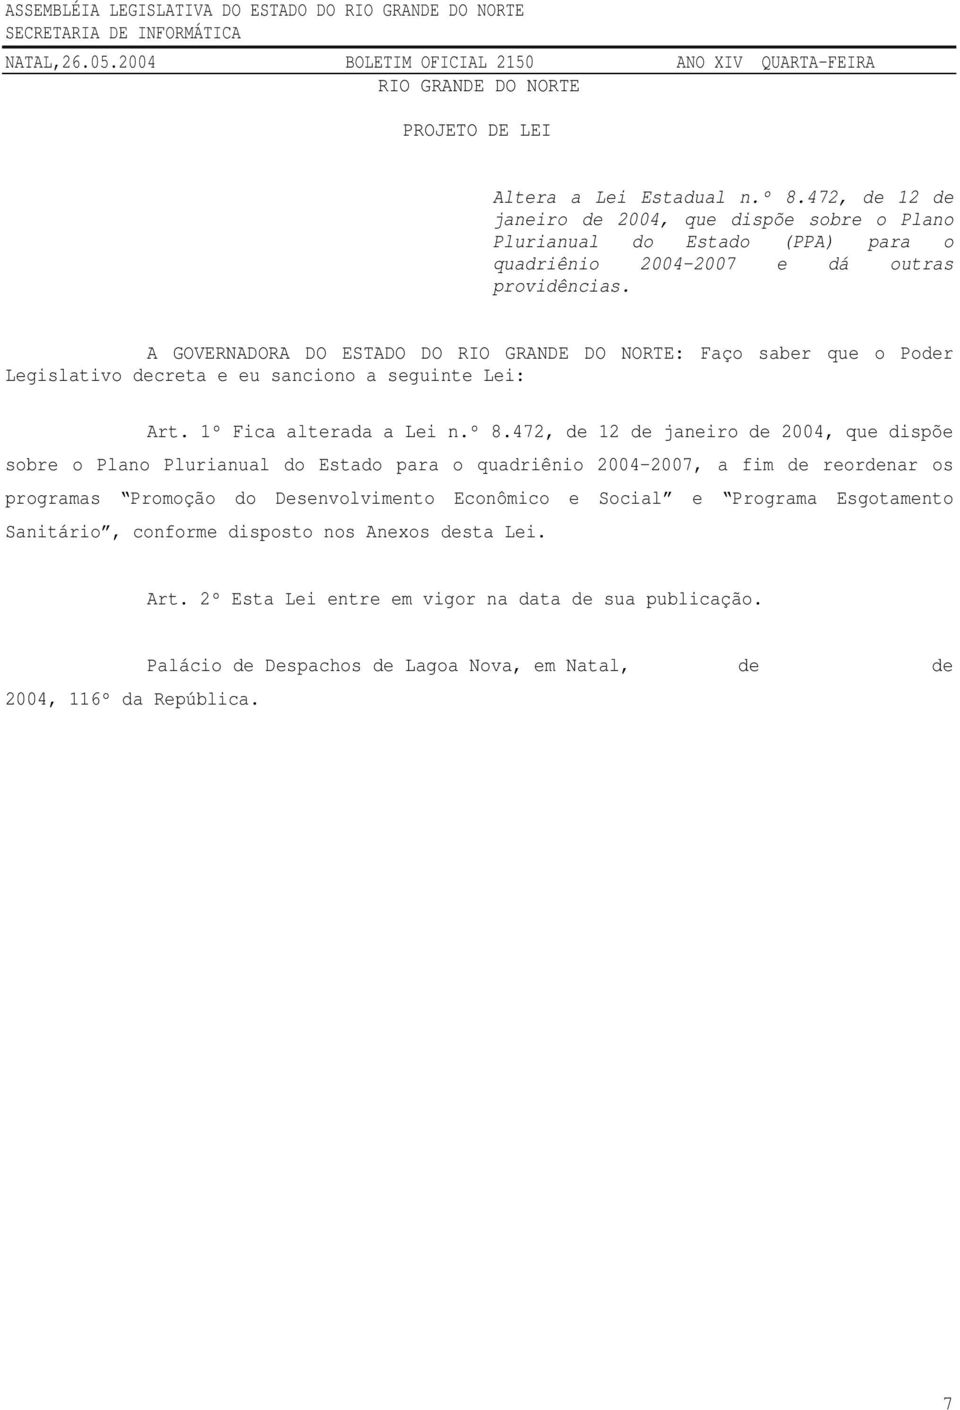 A GOVERNADORA DO ESTADO DO RIO GRANDE DO NORTE: Faço saber que o Poder Legislativo decreta e eu sanciono a seguinte Lei: Art. 1º Fica alterada a Lei n.º 8.